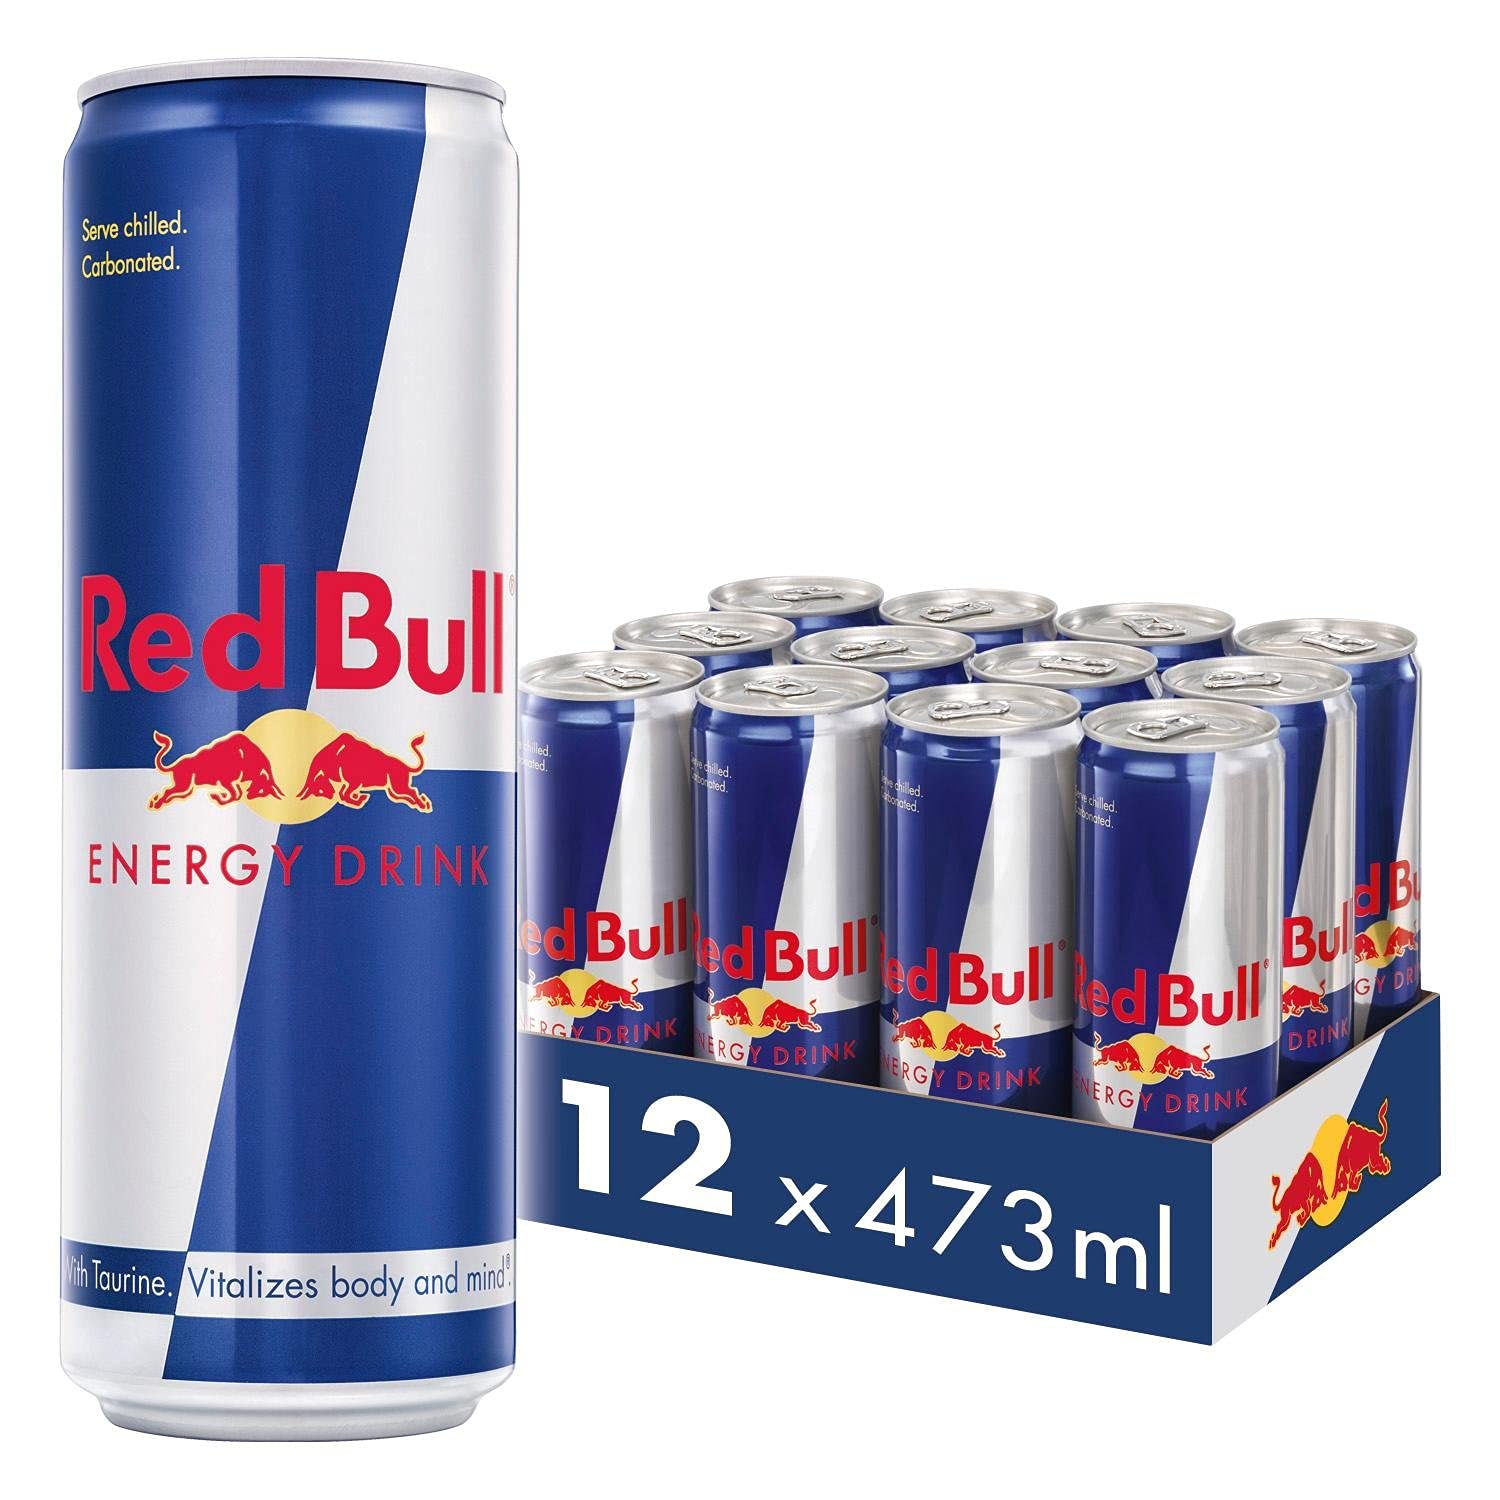 Red Bull Energy Drink - 473 ml - Case of 12